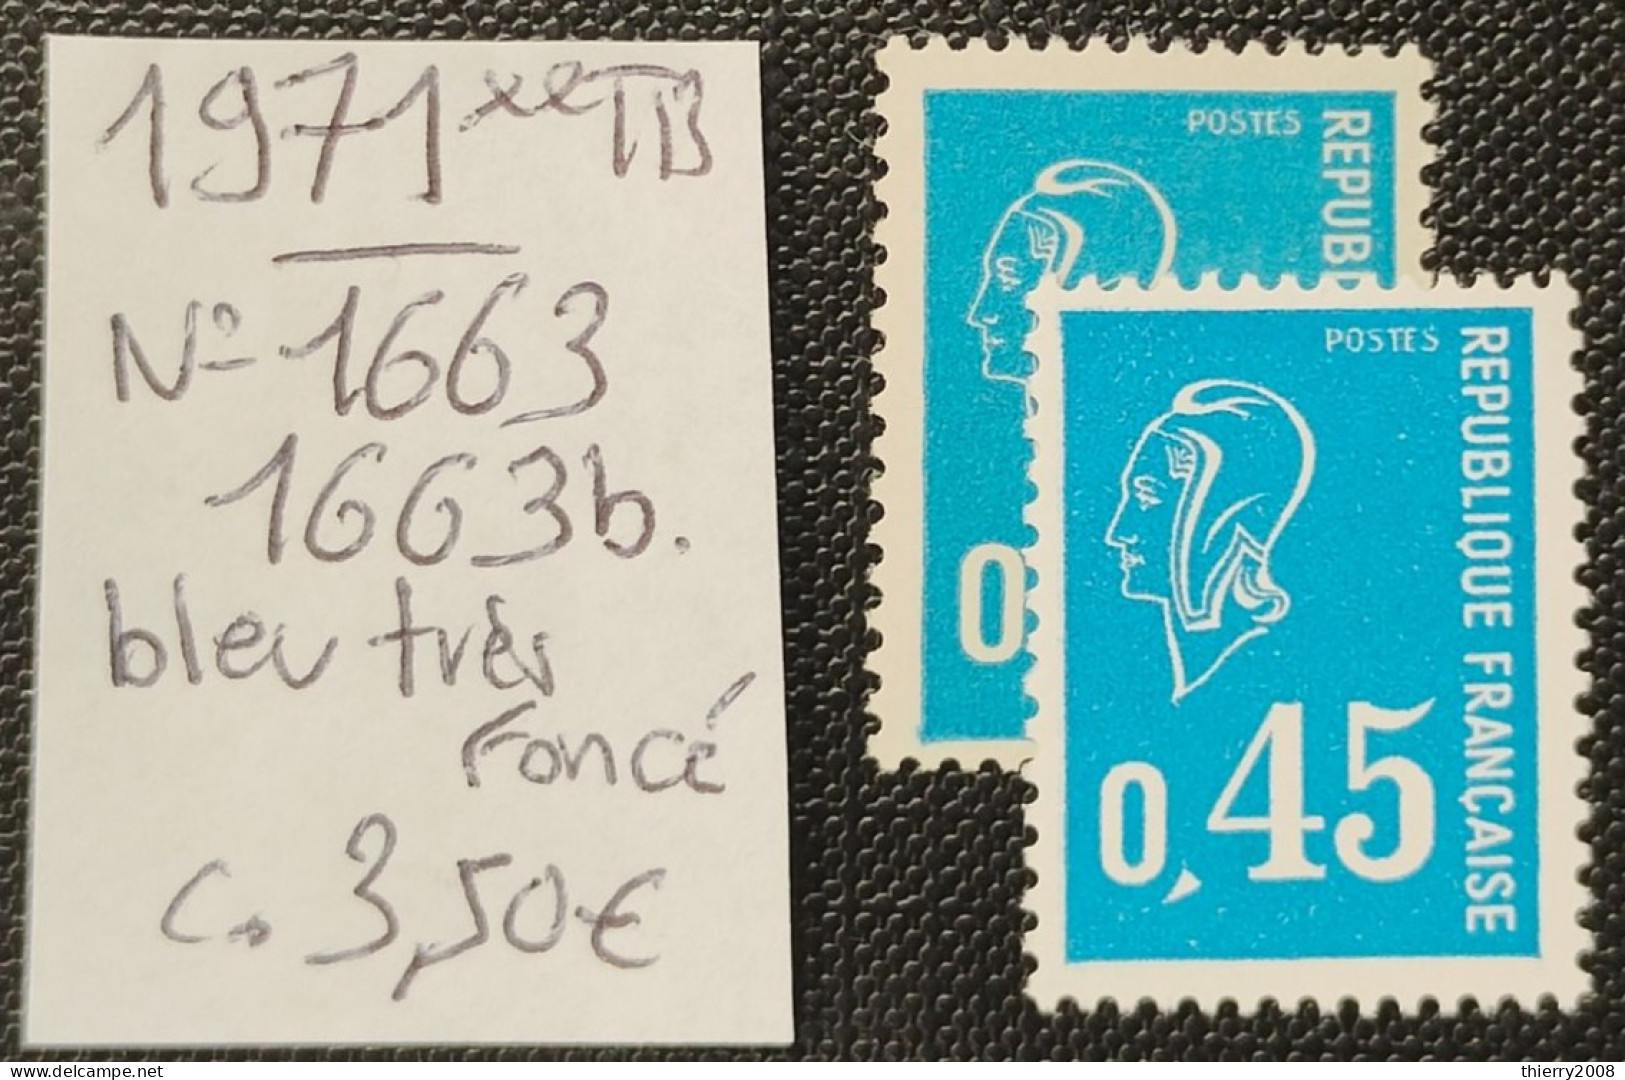 N° 1663/1663b (Variété, Bleu Et Bleu Foncé)  Neuf **  TB - Neufs